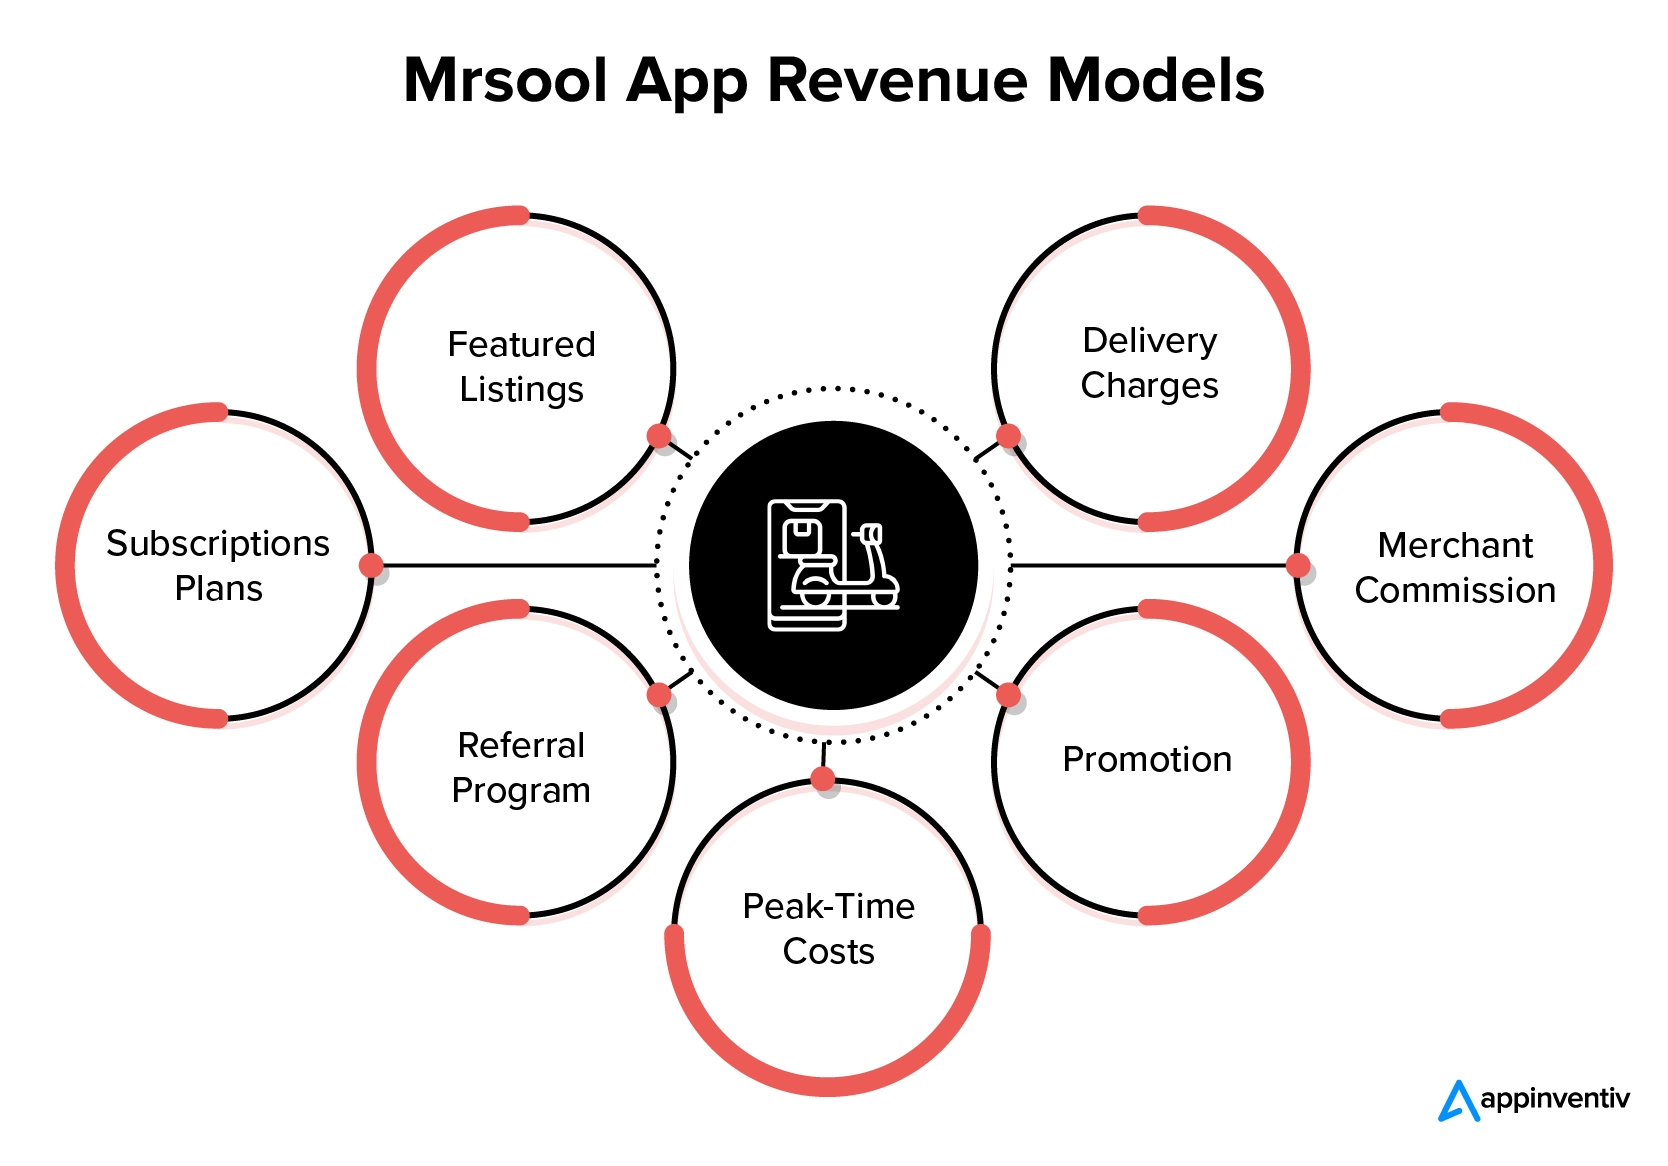 Modelo de ingresos para una aplicación similar a Mrsool